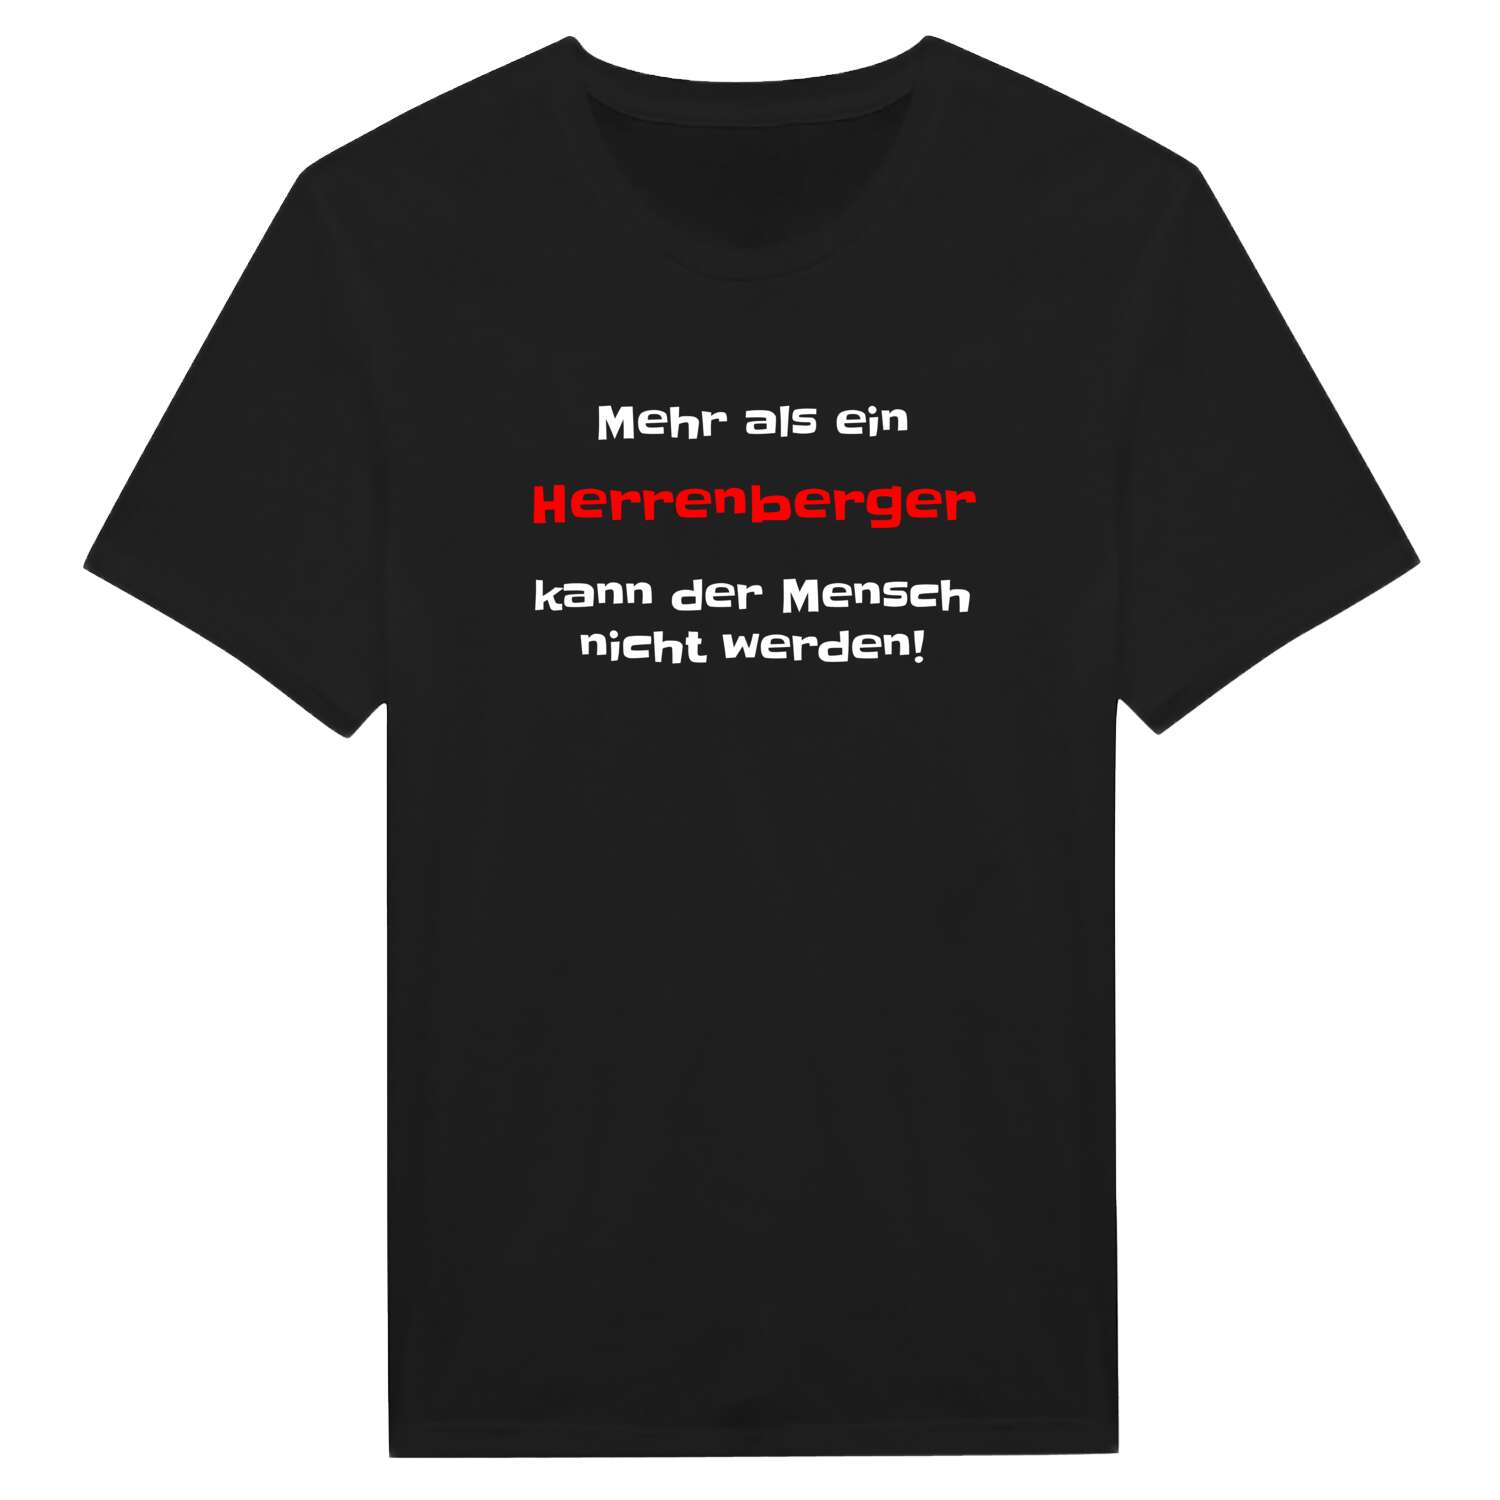 Herrenberg T-Shirt »Mehr als ein«